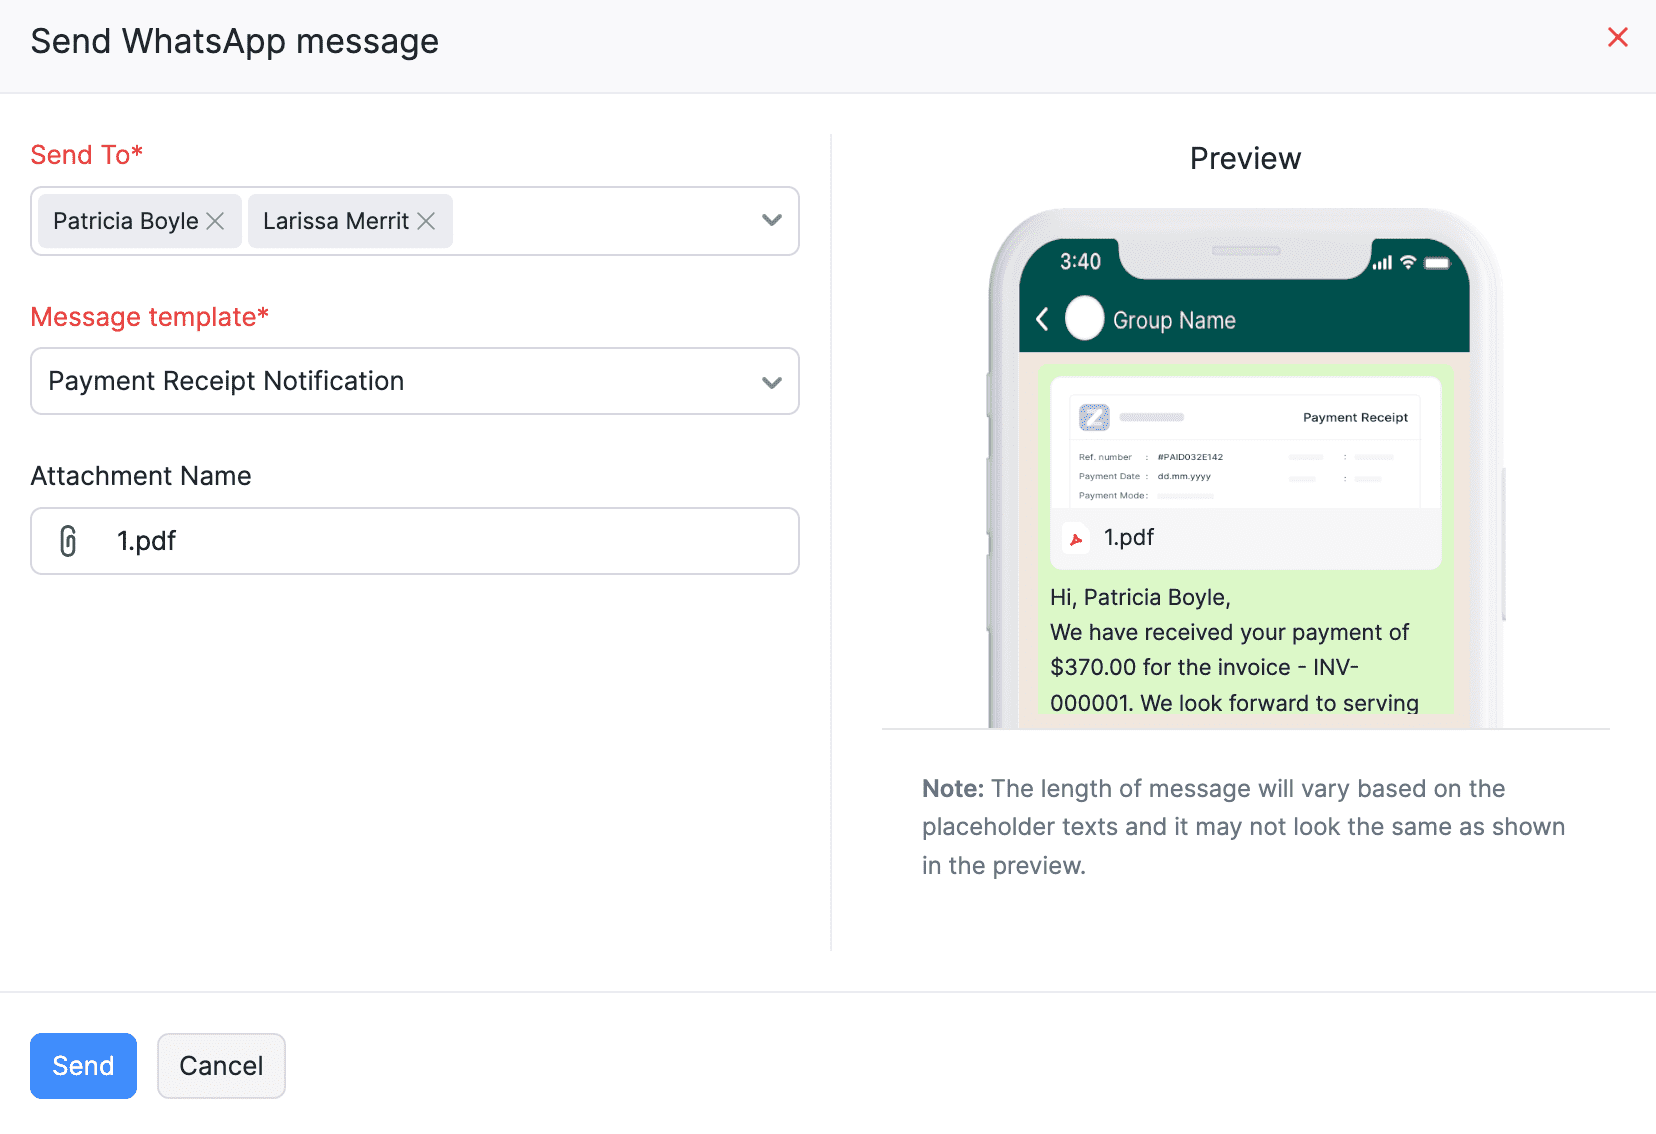 Send WhatsApp Message - Payment Receipt